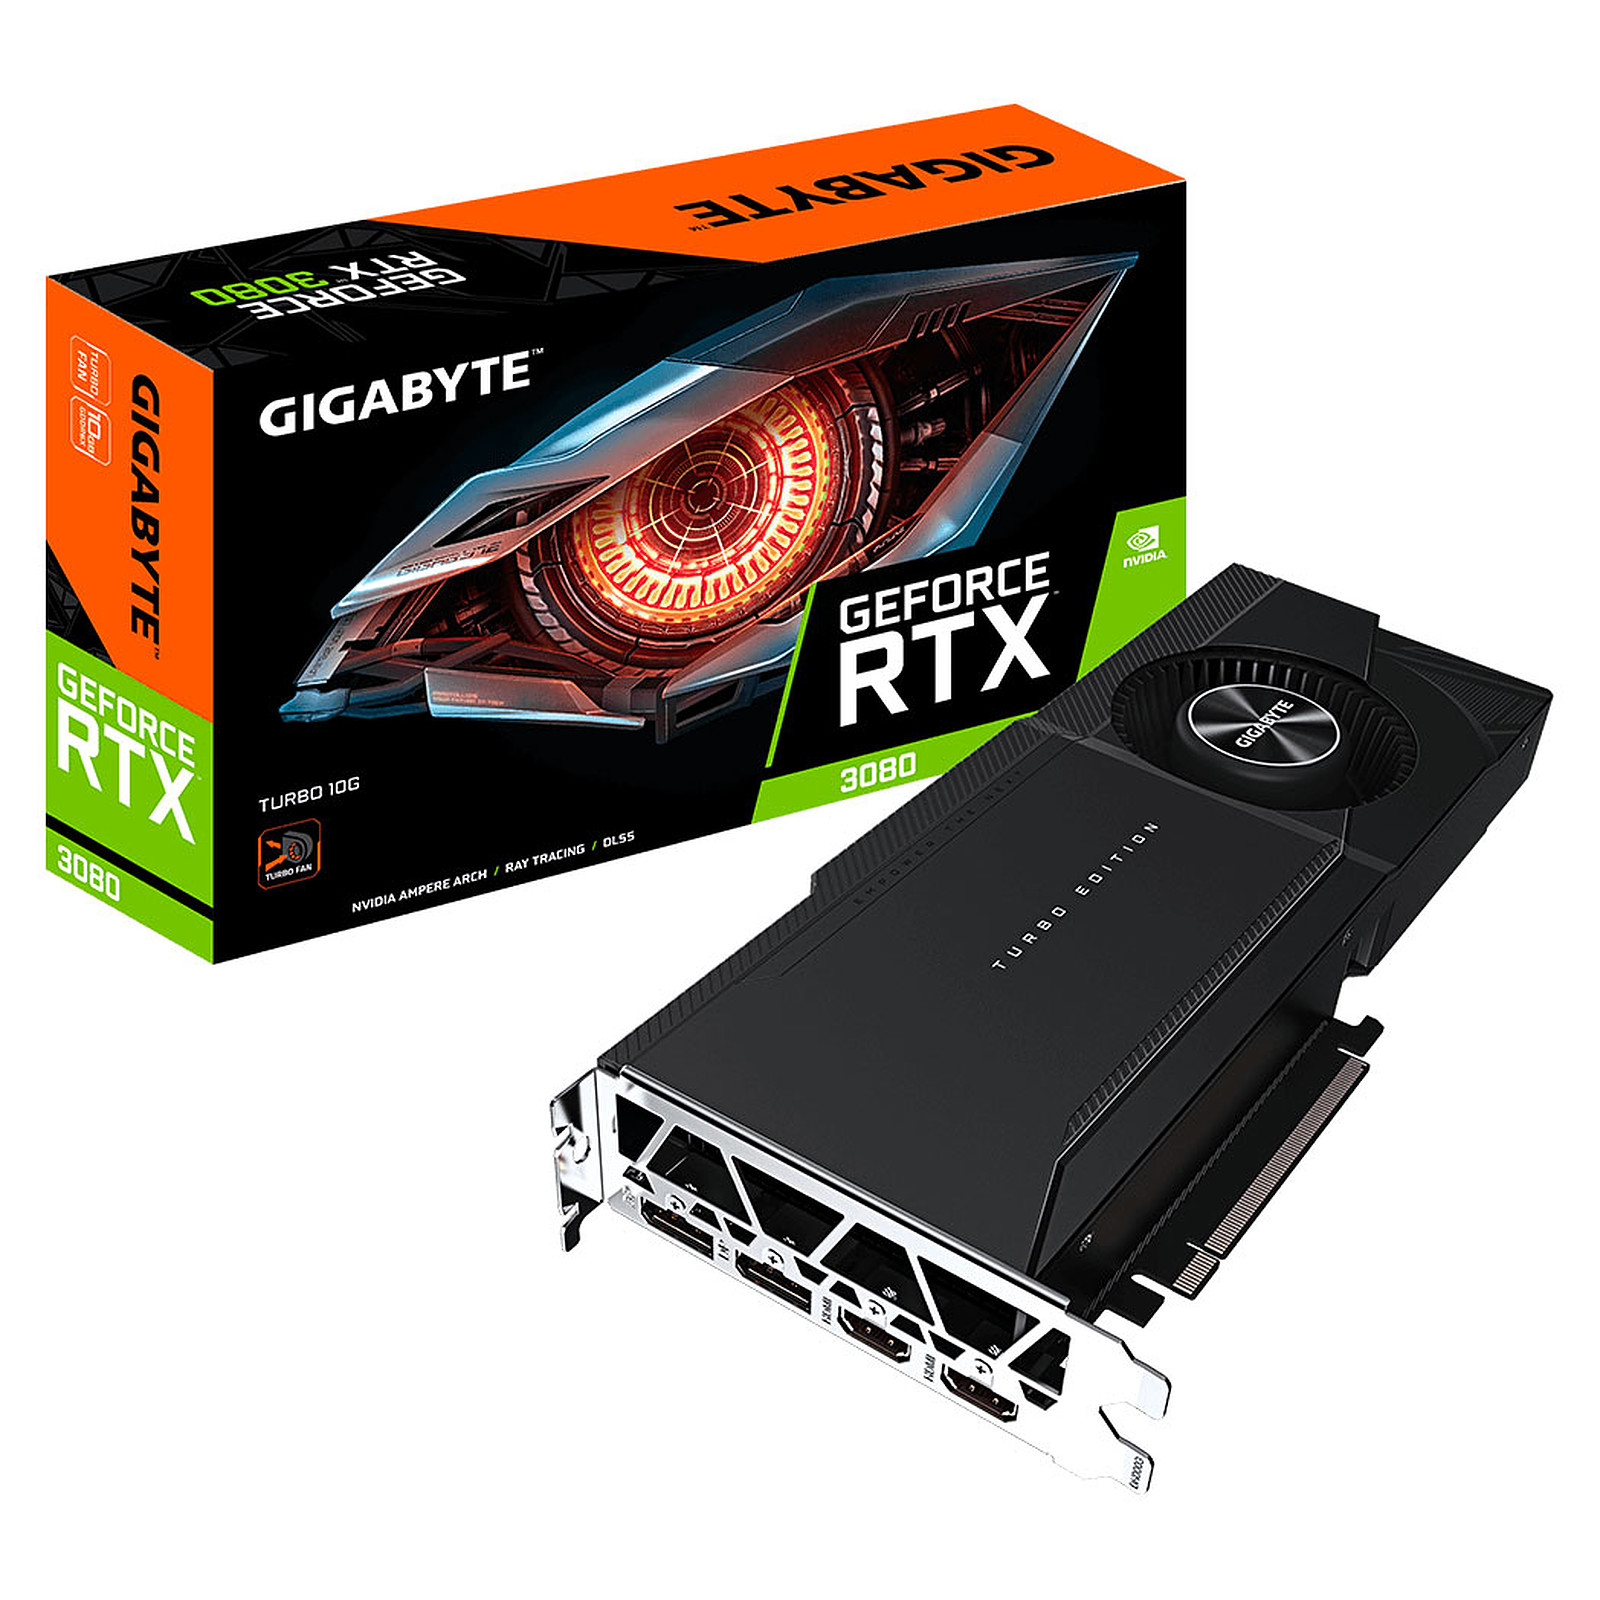 Gigabyte GeForce RTX 3080 TURBO 10G (rev. 2.0) (LHR) - Carte graphique Gigabyte